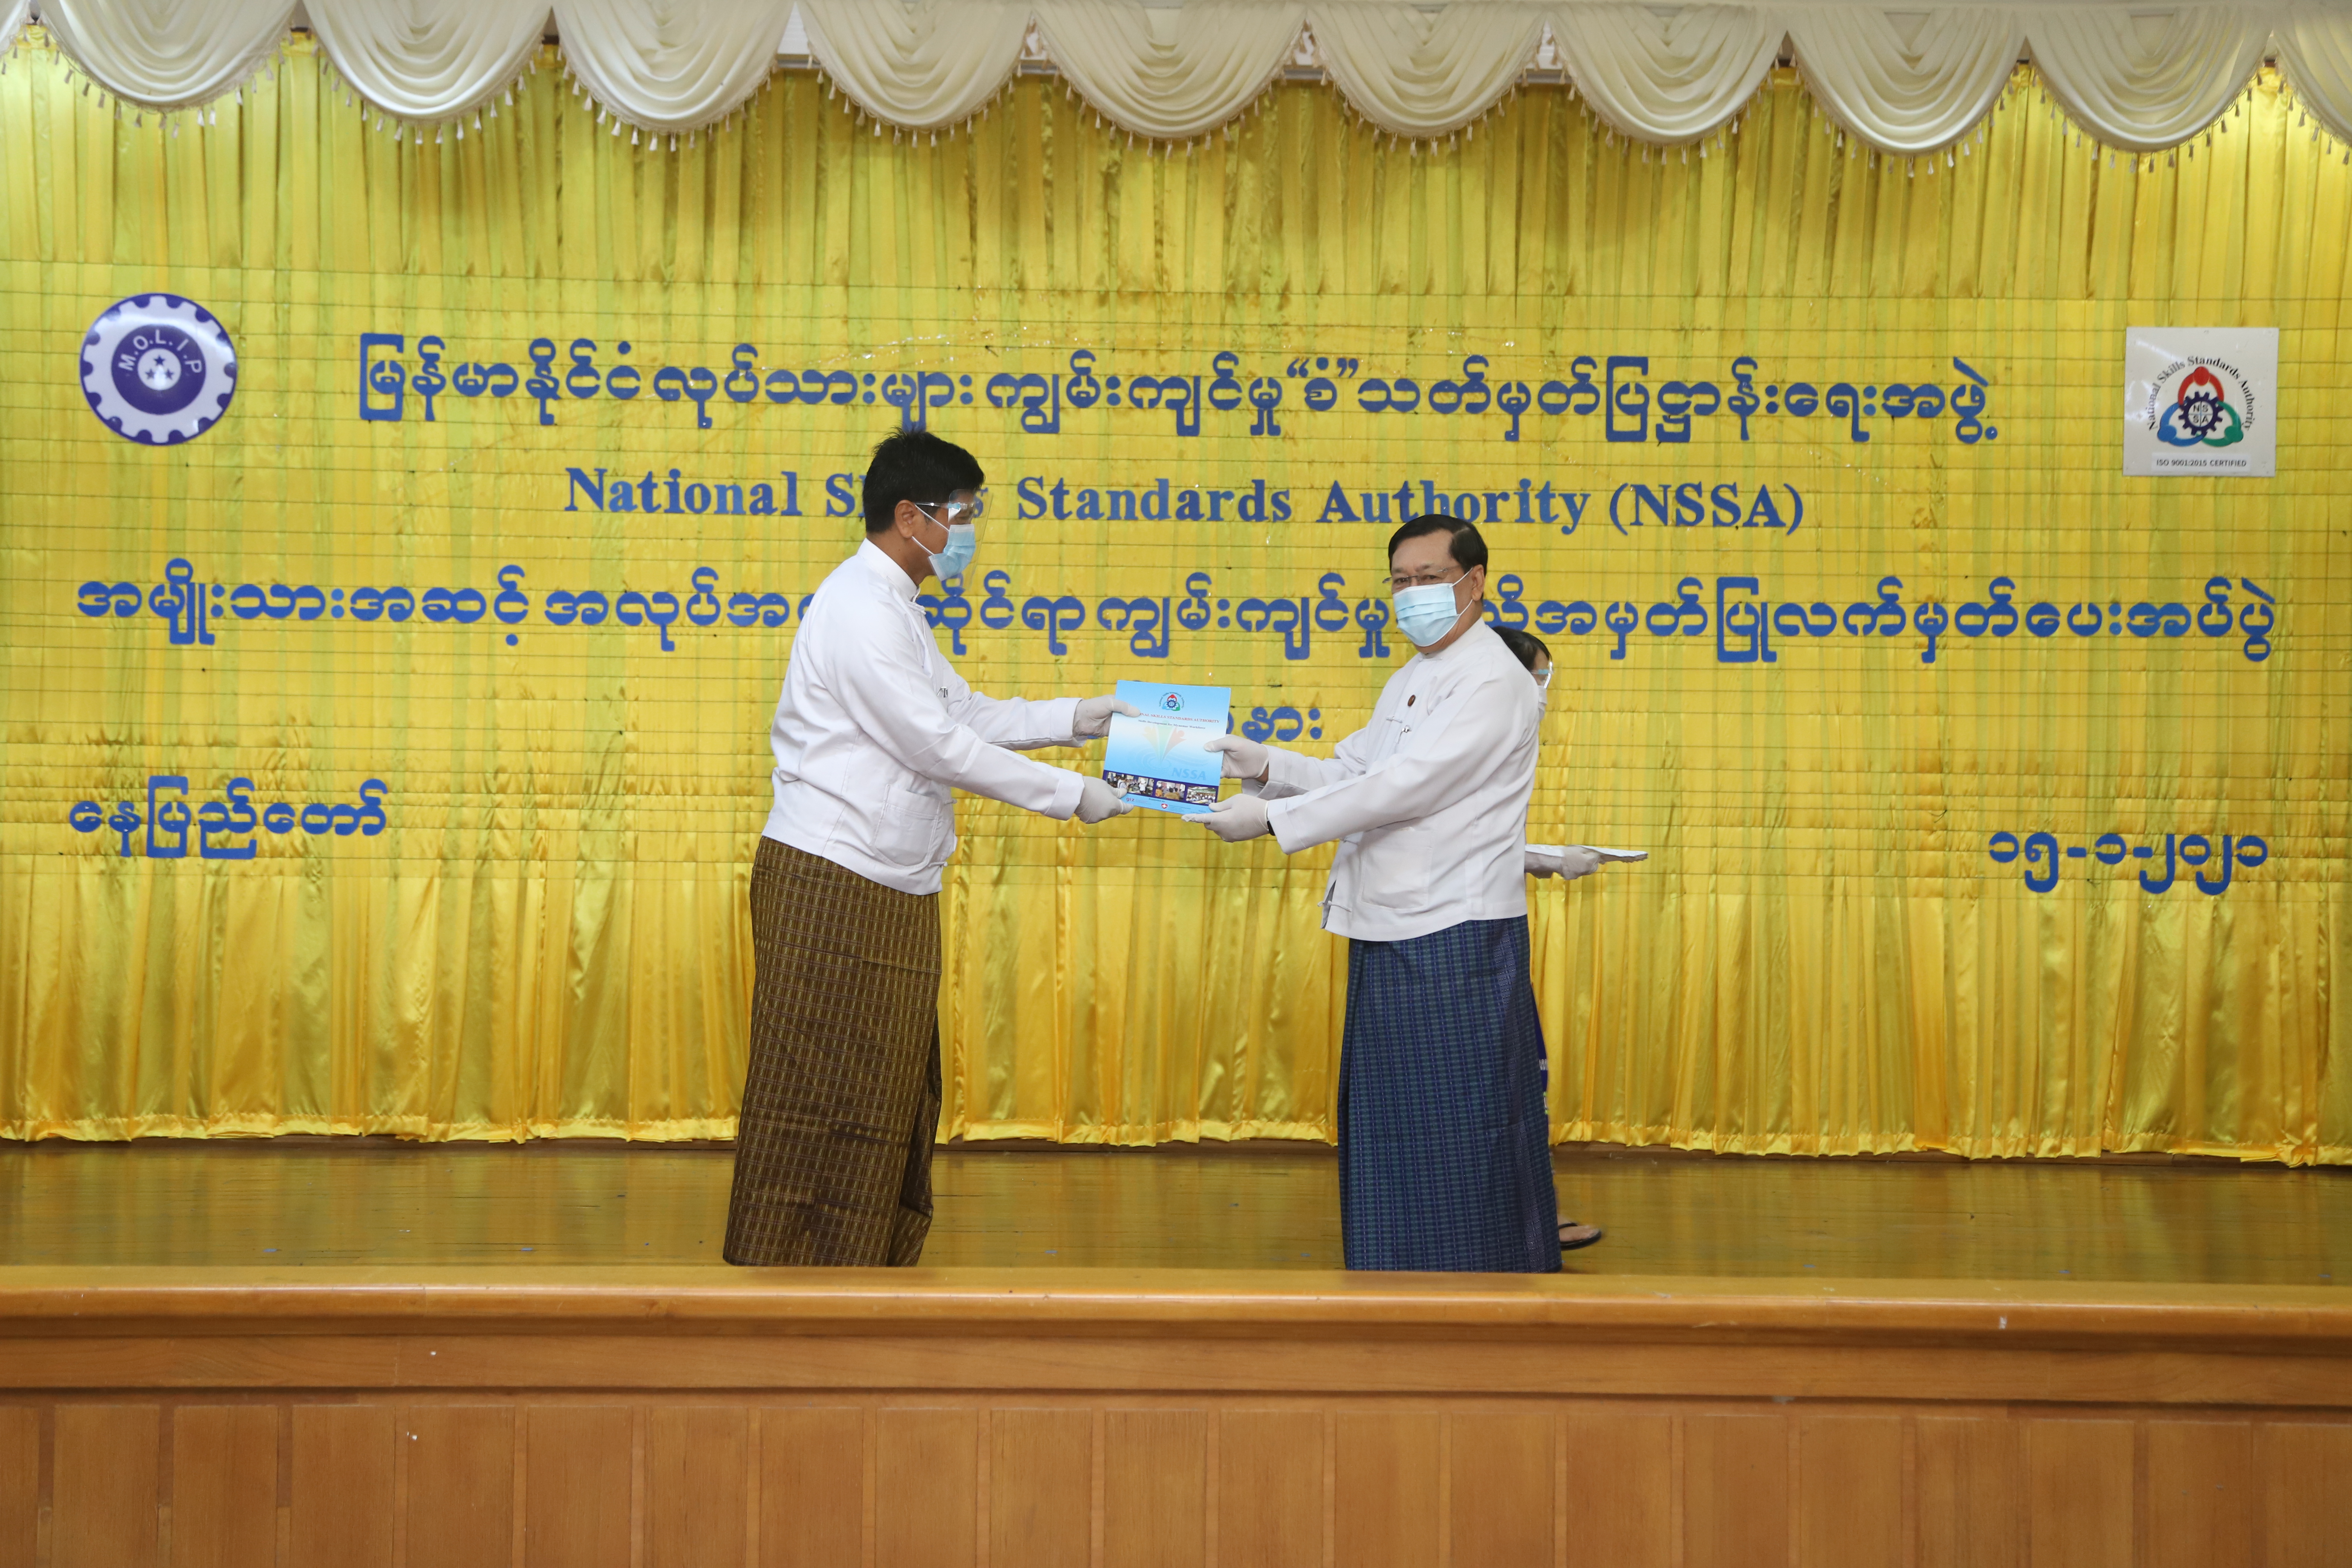 မြန်မာနိုင်ငံ လုပ်သားများ ကျွမ်းကျင်မှု “စံ” သတ်မှတ်ပြဋ္ဌာန်းရေးအဖွဲ့ အမျိုးသားအဆင့် အလုပ်အကိုင်ဆိုင်ရာ ကျွမ်းကျင်မှုအသိအမှတ်ပြုလက်မှတ်ပေးအပ်ပွဲအခမ်းအနားတွင် အသိအမှတ်ပြုလက်မှတ်ရရှိသည့် စစ်ဆေးအကဲဖြတ်သူ တစ်ဦးအား အသိအမှတ်ပြုလက်မှတ်ပေးအပ်စဉ်